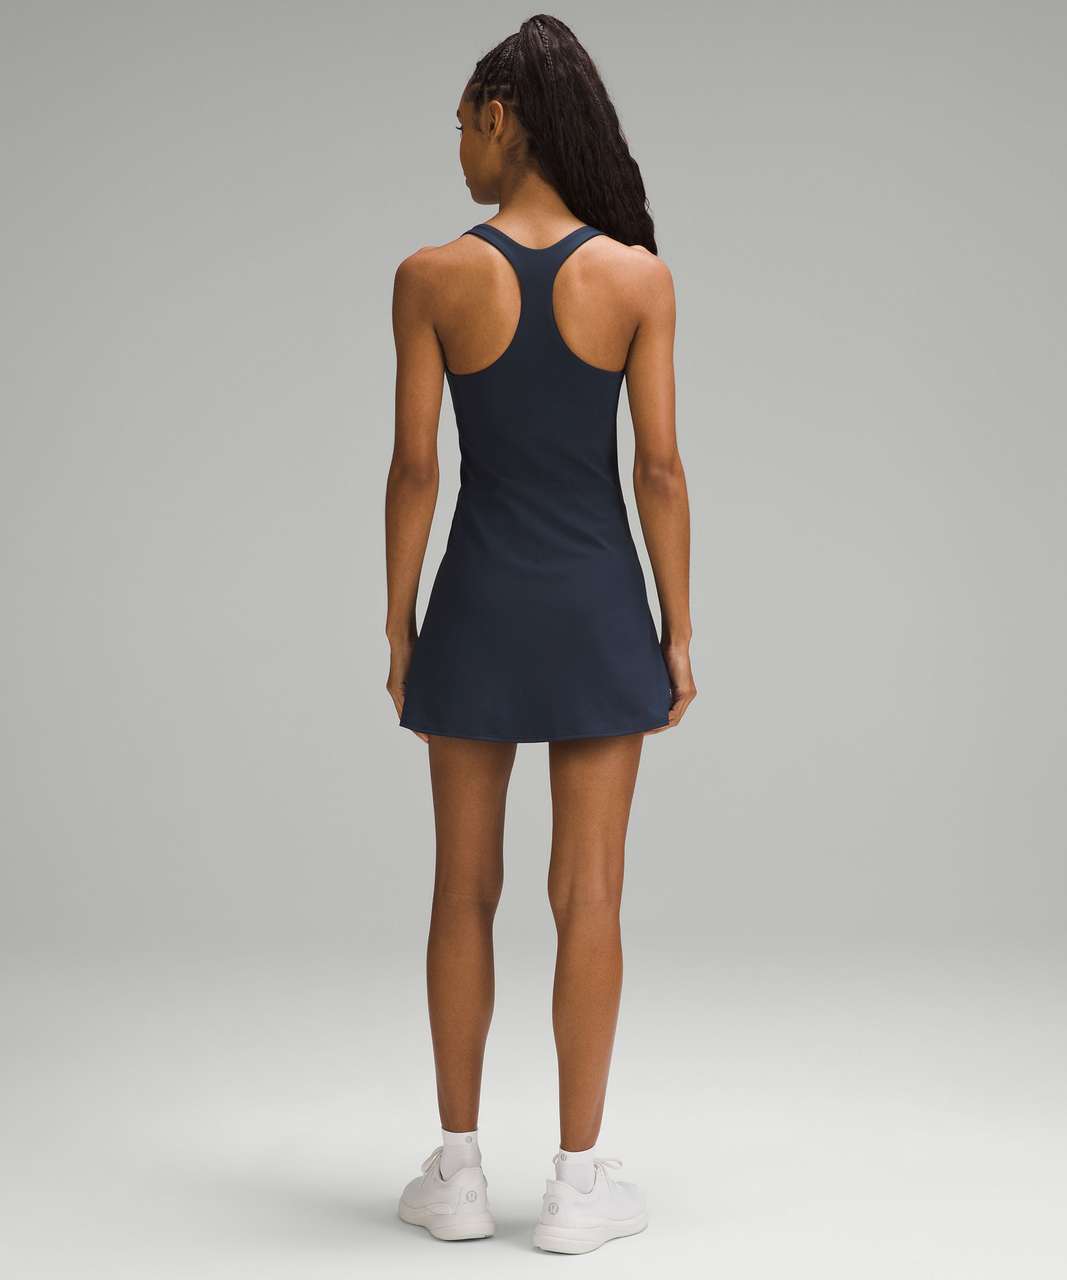 Lululemon Lightweight Tennis Dress - True Navy